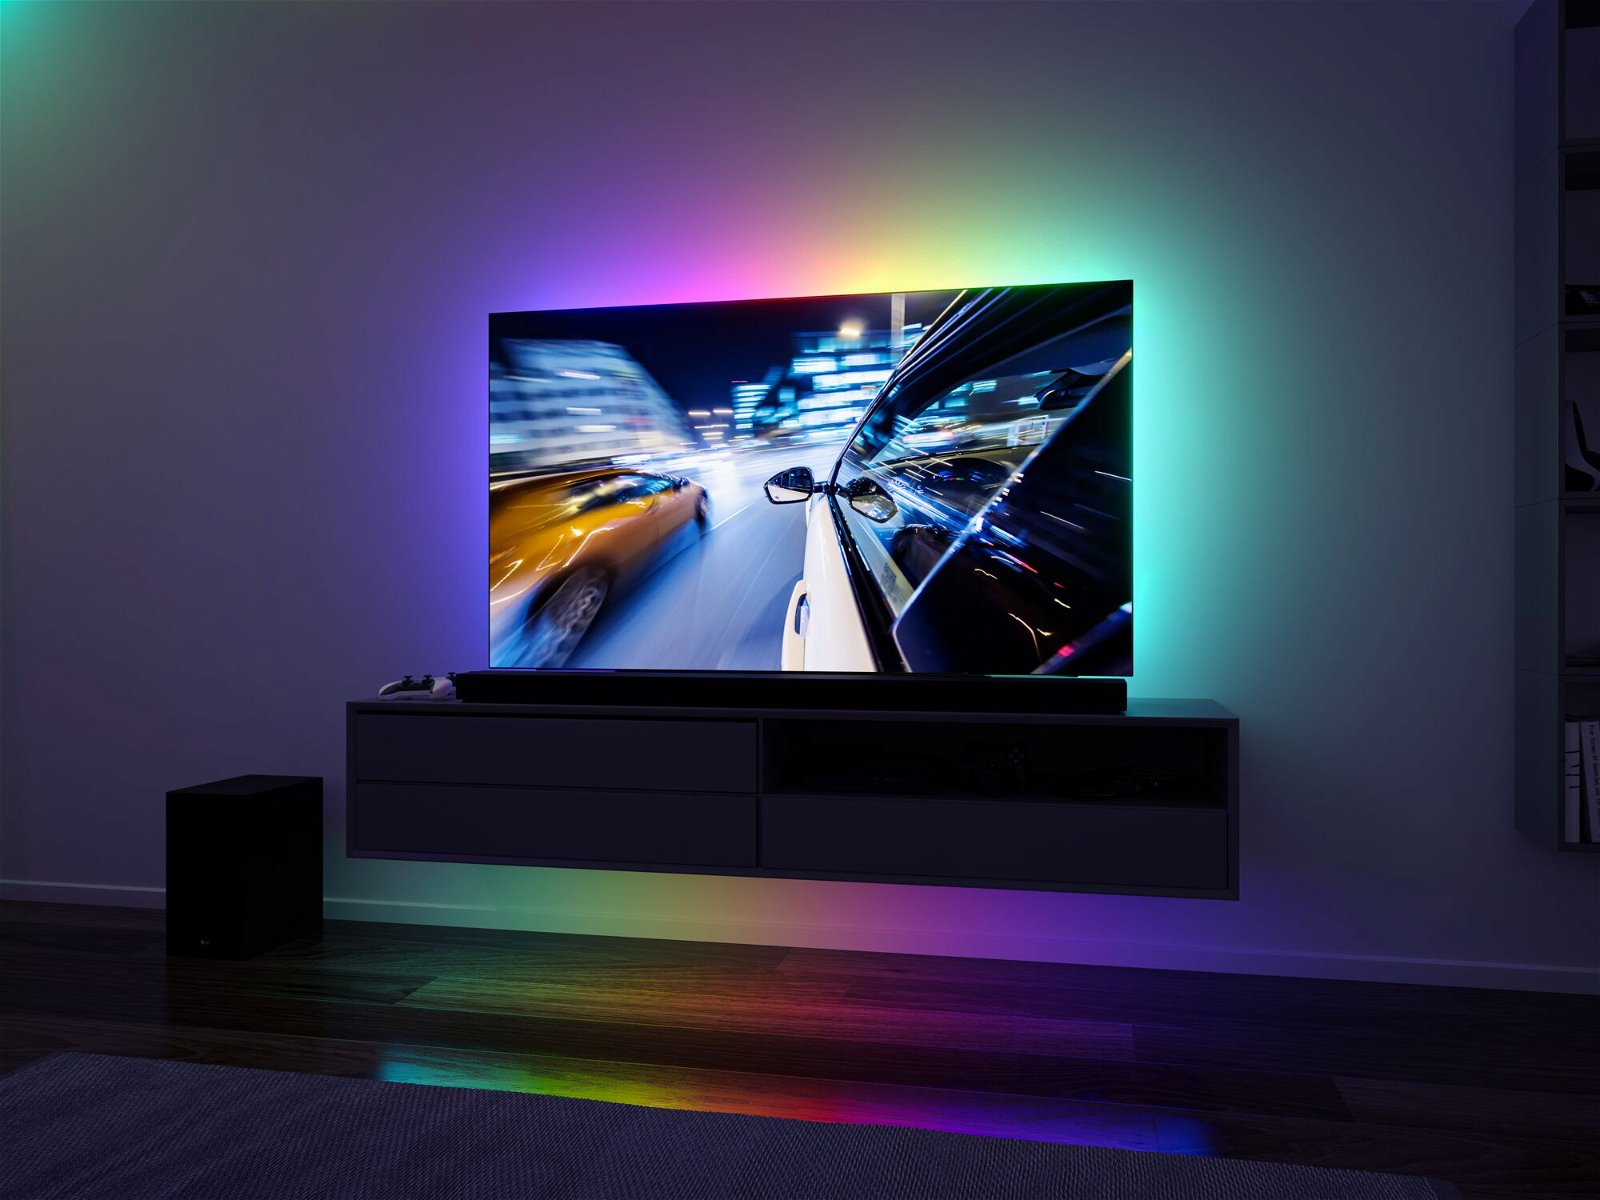 PC Bildschirm LED TV Hintergrundbeleuchtung,WOANWAY USB LED Strip 2M RGB Fernseher Beleuchtung Strips,Mit 44 Tasten Fernbedienung und Sync mit Musik LED Streifen für 40-60 Zoll HDTV/ TV-Bildschirm 